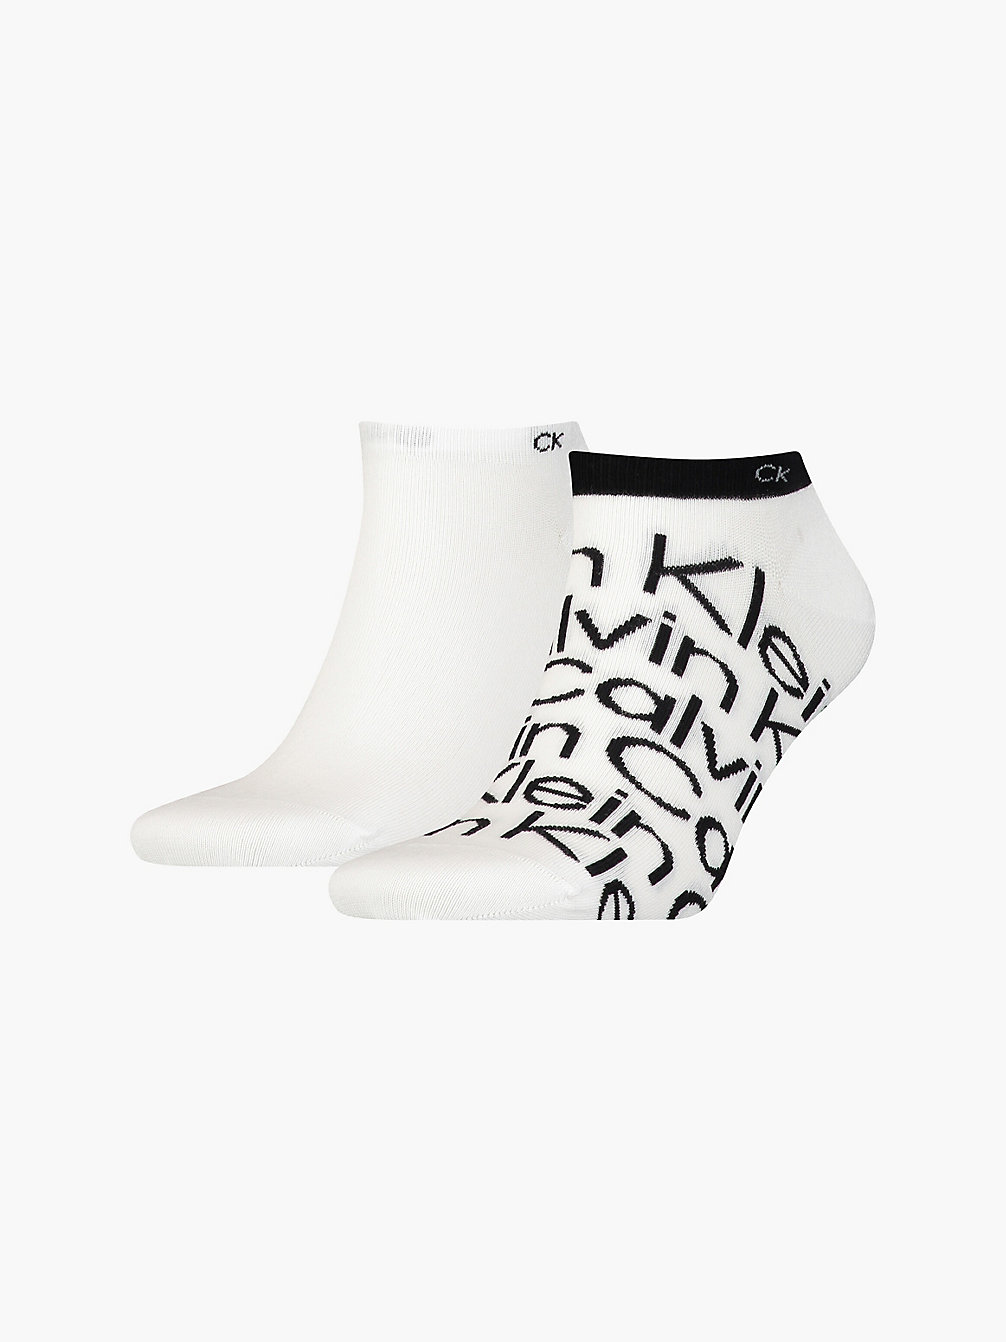 WHITE > Комплект носков длиной по щиколотку с логотипом 2 пары > undefined женщины - Calvin Klein